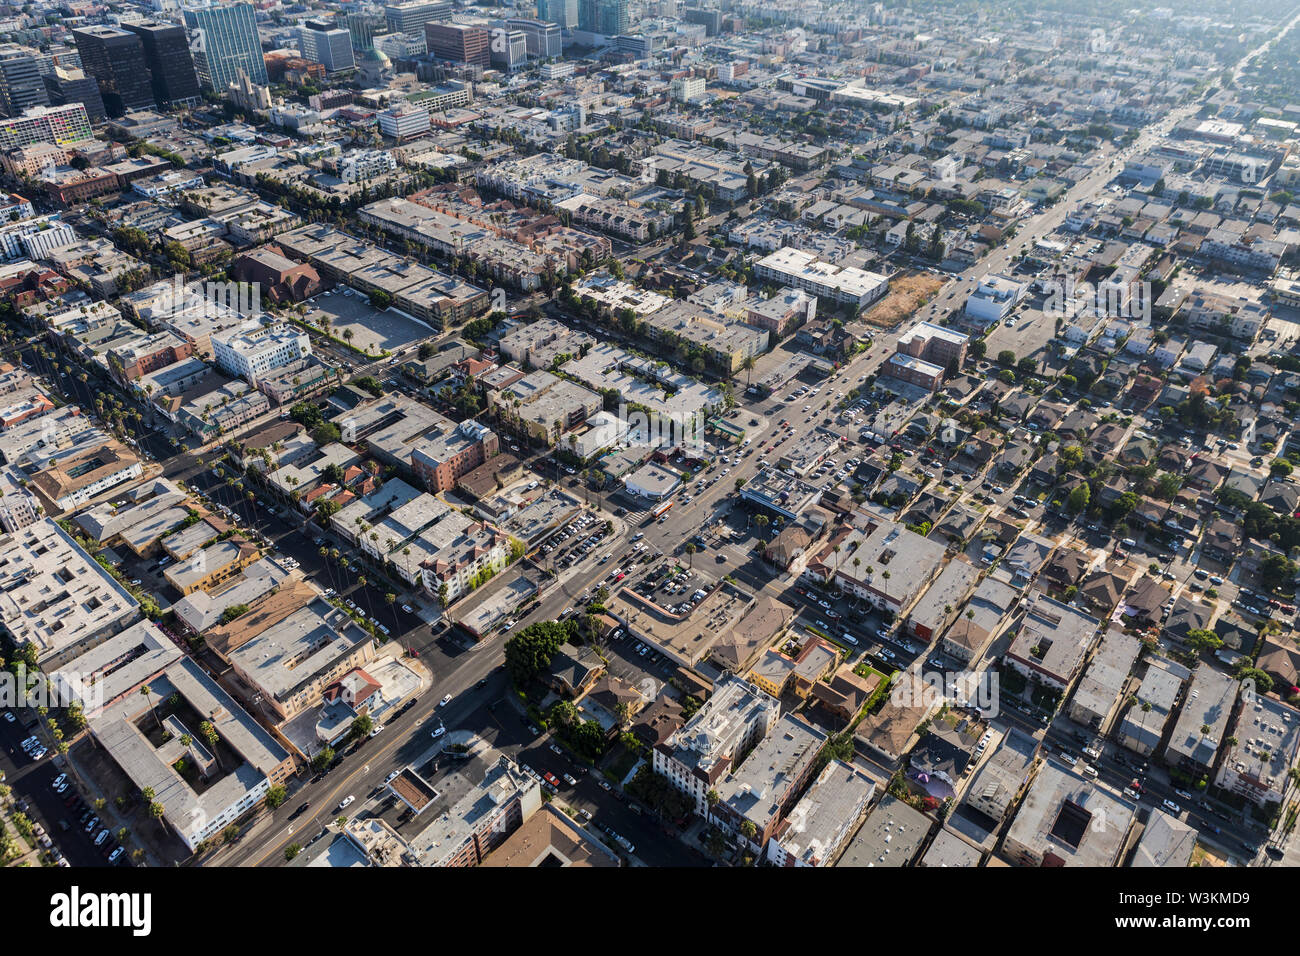 Vue aérienne de bâtiments urbains, appartements et maisons le long de la 3e rue ouest du centre-ville de Los Angeles en Californie. Banque D'Images